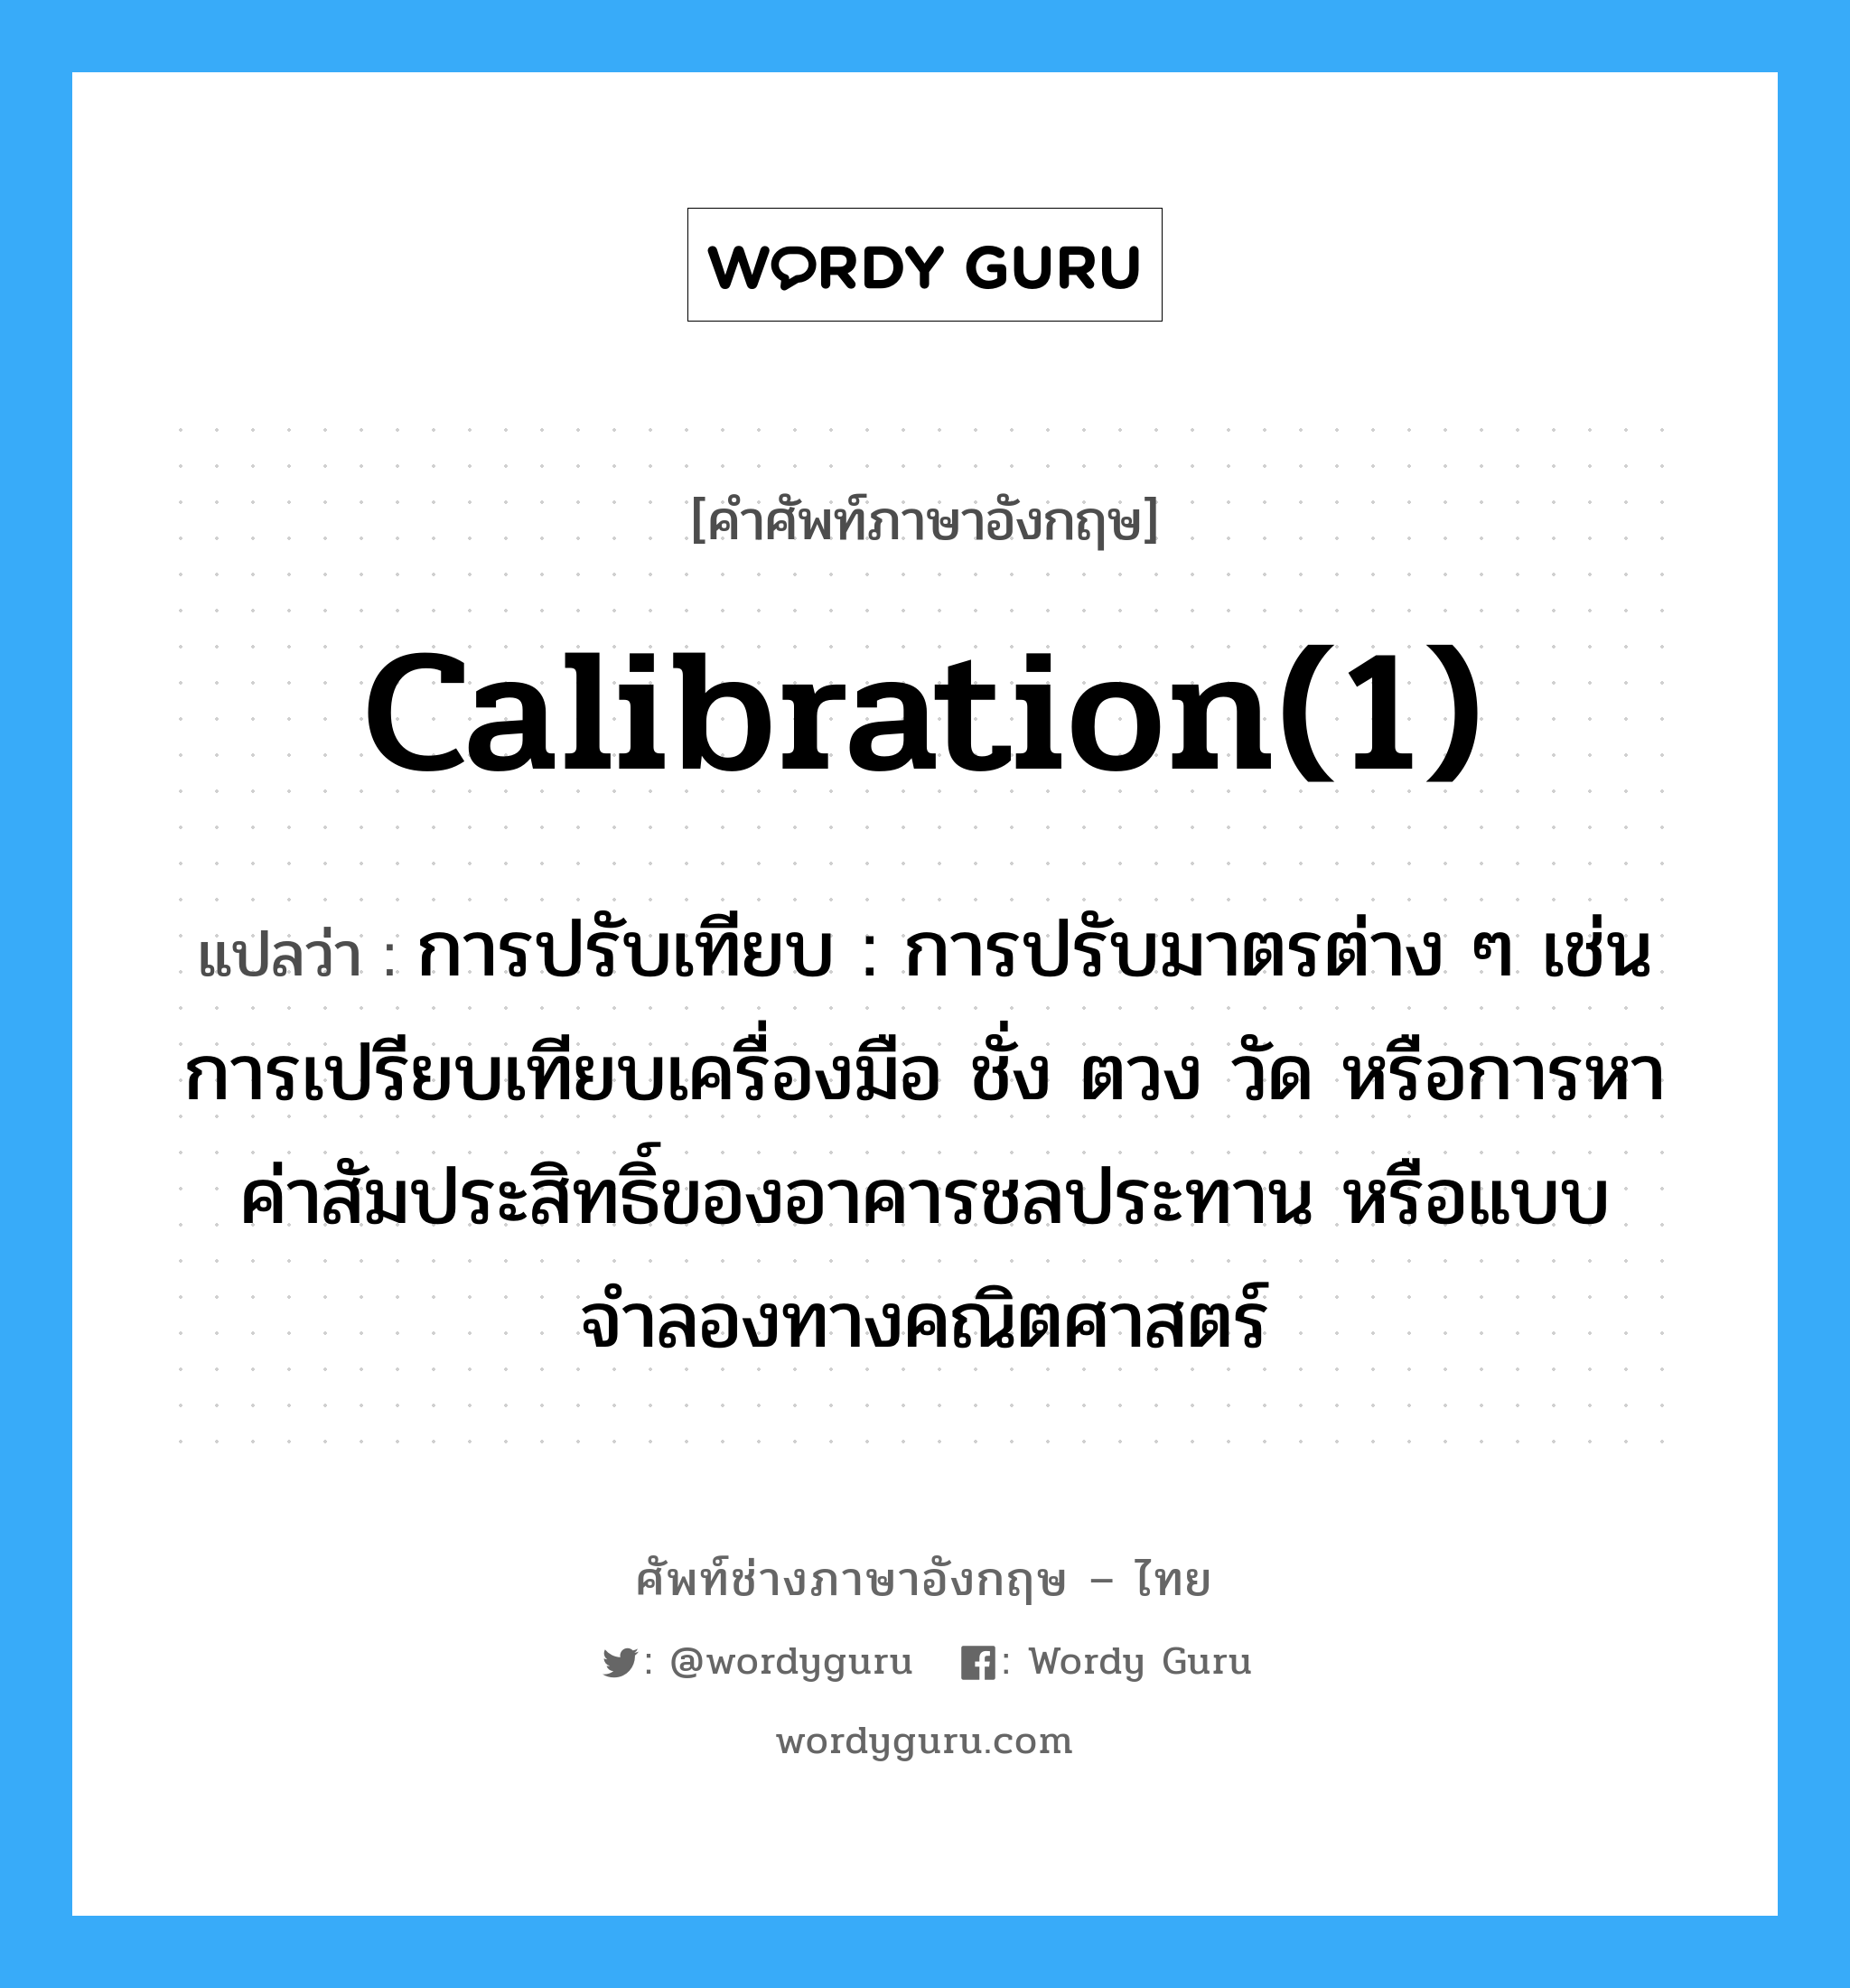 calibration(1) แปลว่า?, คำศัพท์ช่างภาษาอังกฤษ - ไทย calibration(1) คำศัพท์ภาษาอังกฤษ calibration(1) แปลว่า การปรับเทียบ : การปรับมาตรต่าง ๆ เช่น การเปรียบเทียบเครื่องมือ ชั่ง ตวง วัด หรือการหาค่าสัมประสิทธิ์ของอาคารชลประทาน หรือแบบจำลองทางคณิตศาสตร์